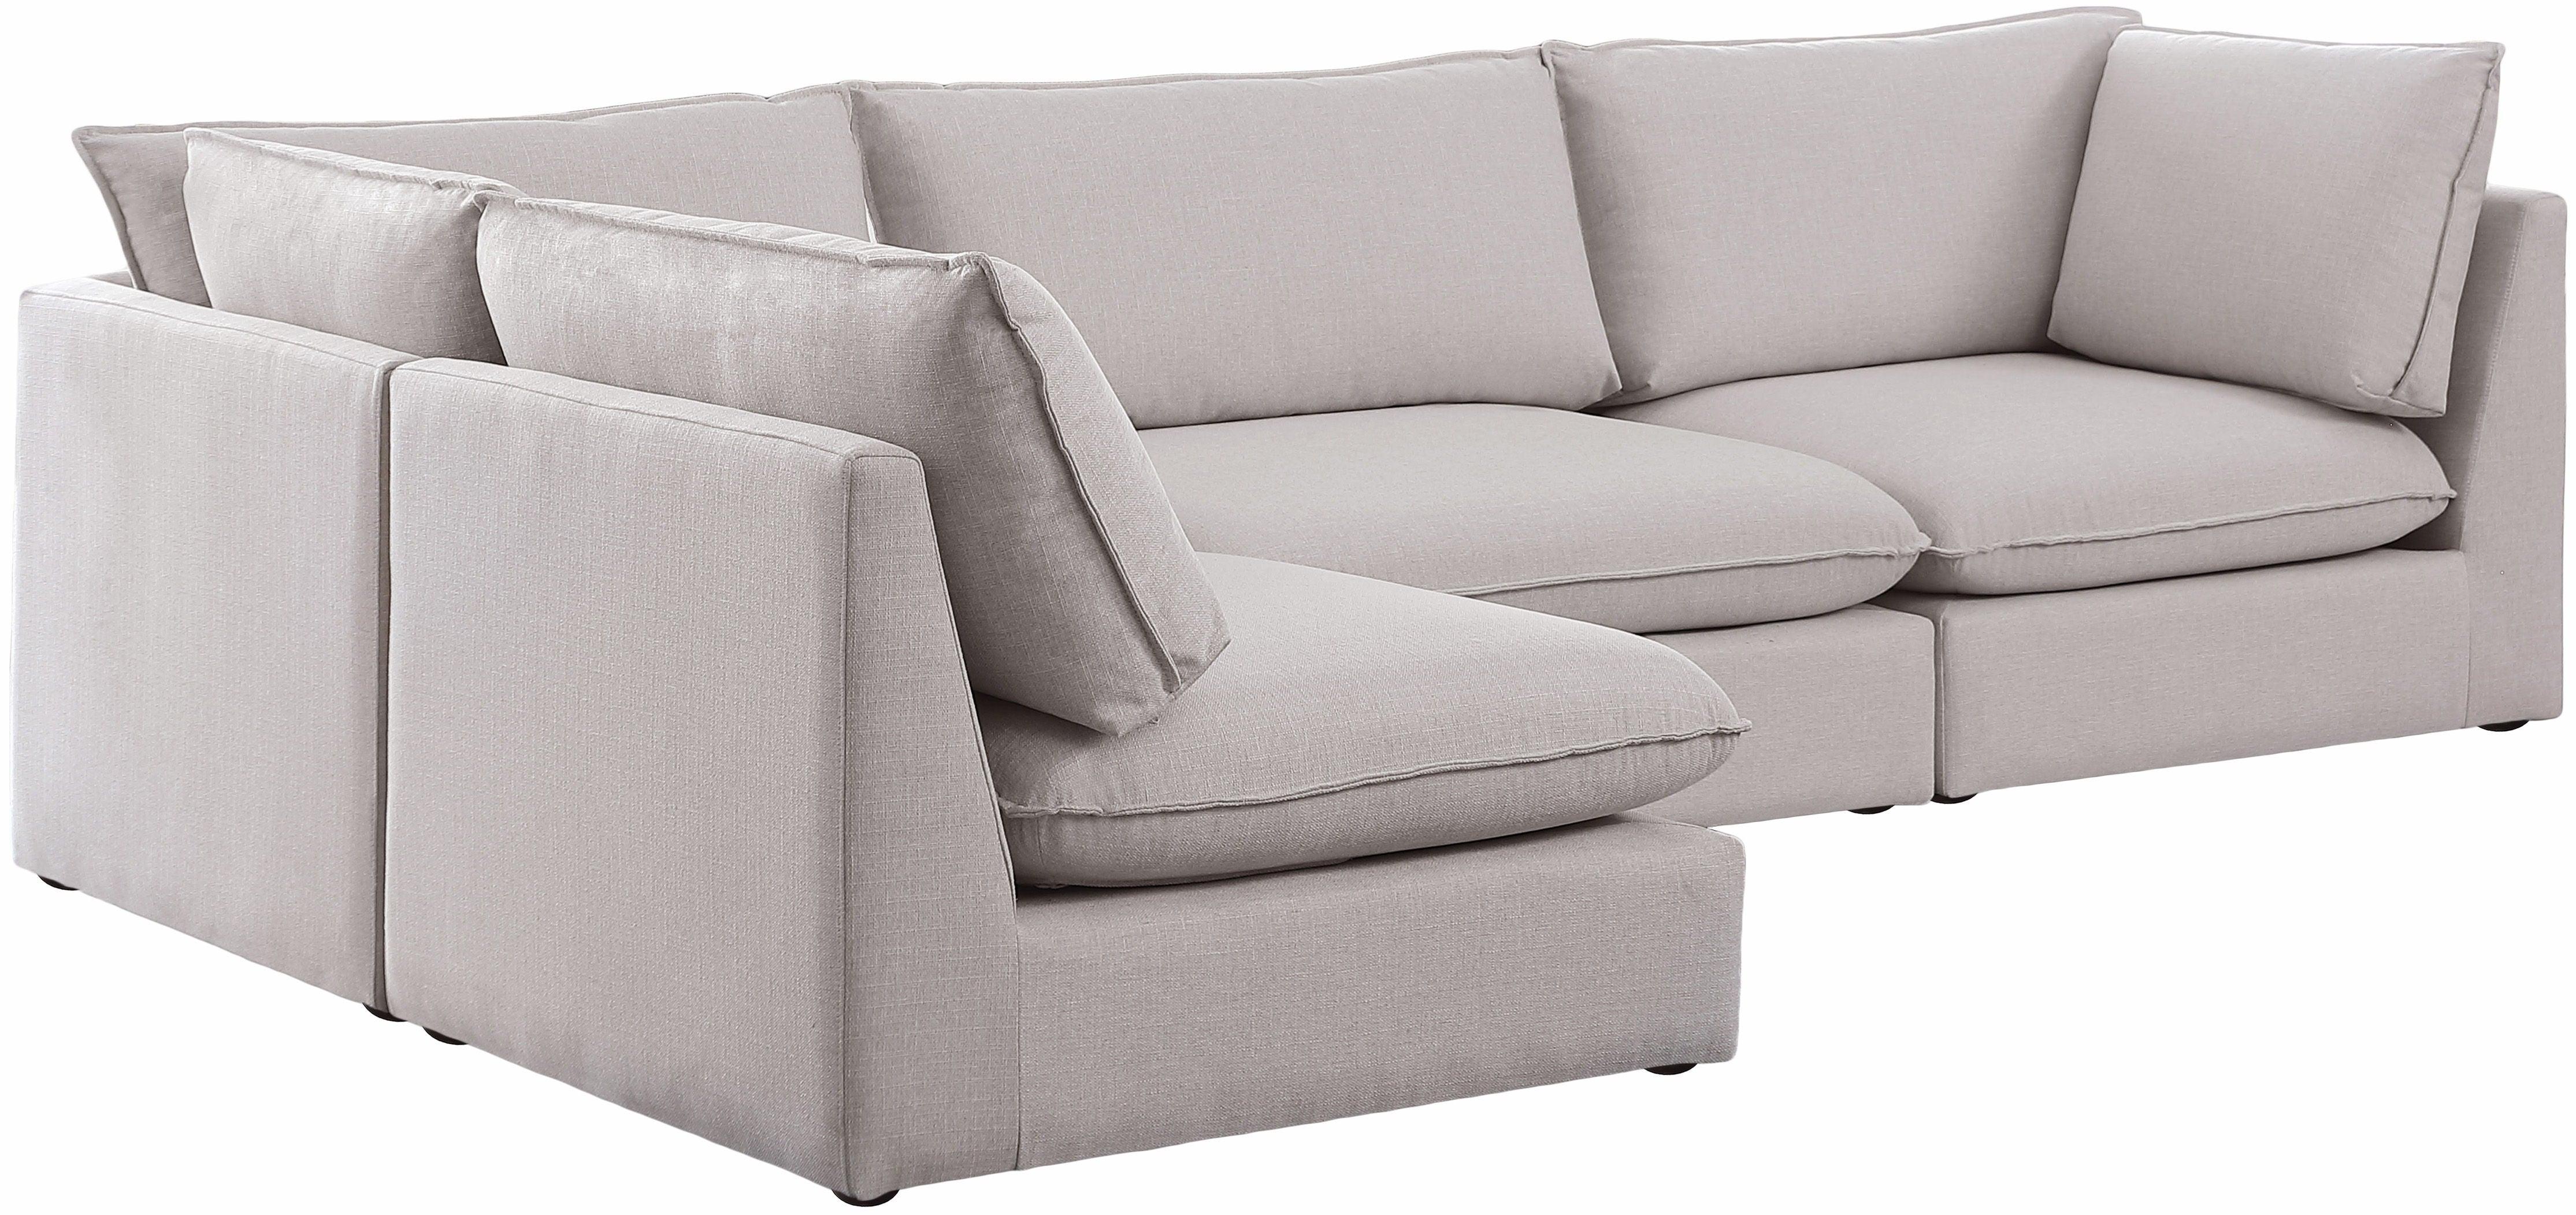 Meridian Furniture - Mackenzie - Modular Sectional 4 Piece - Beige - Fabric - 5th Avenue Furniture